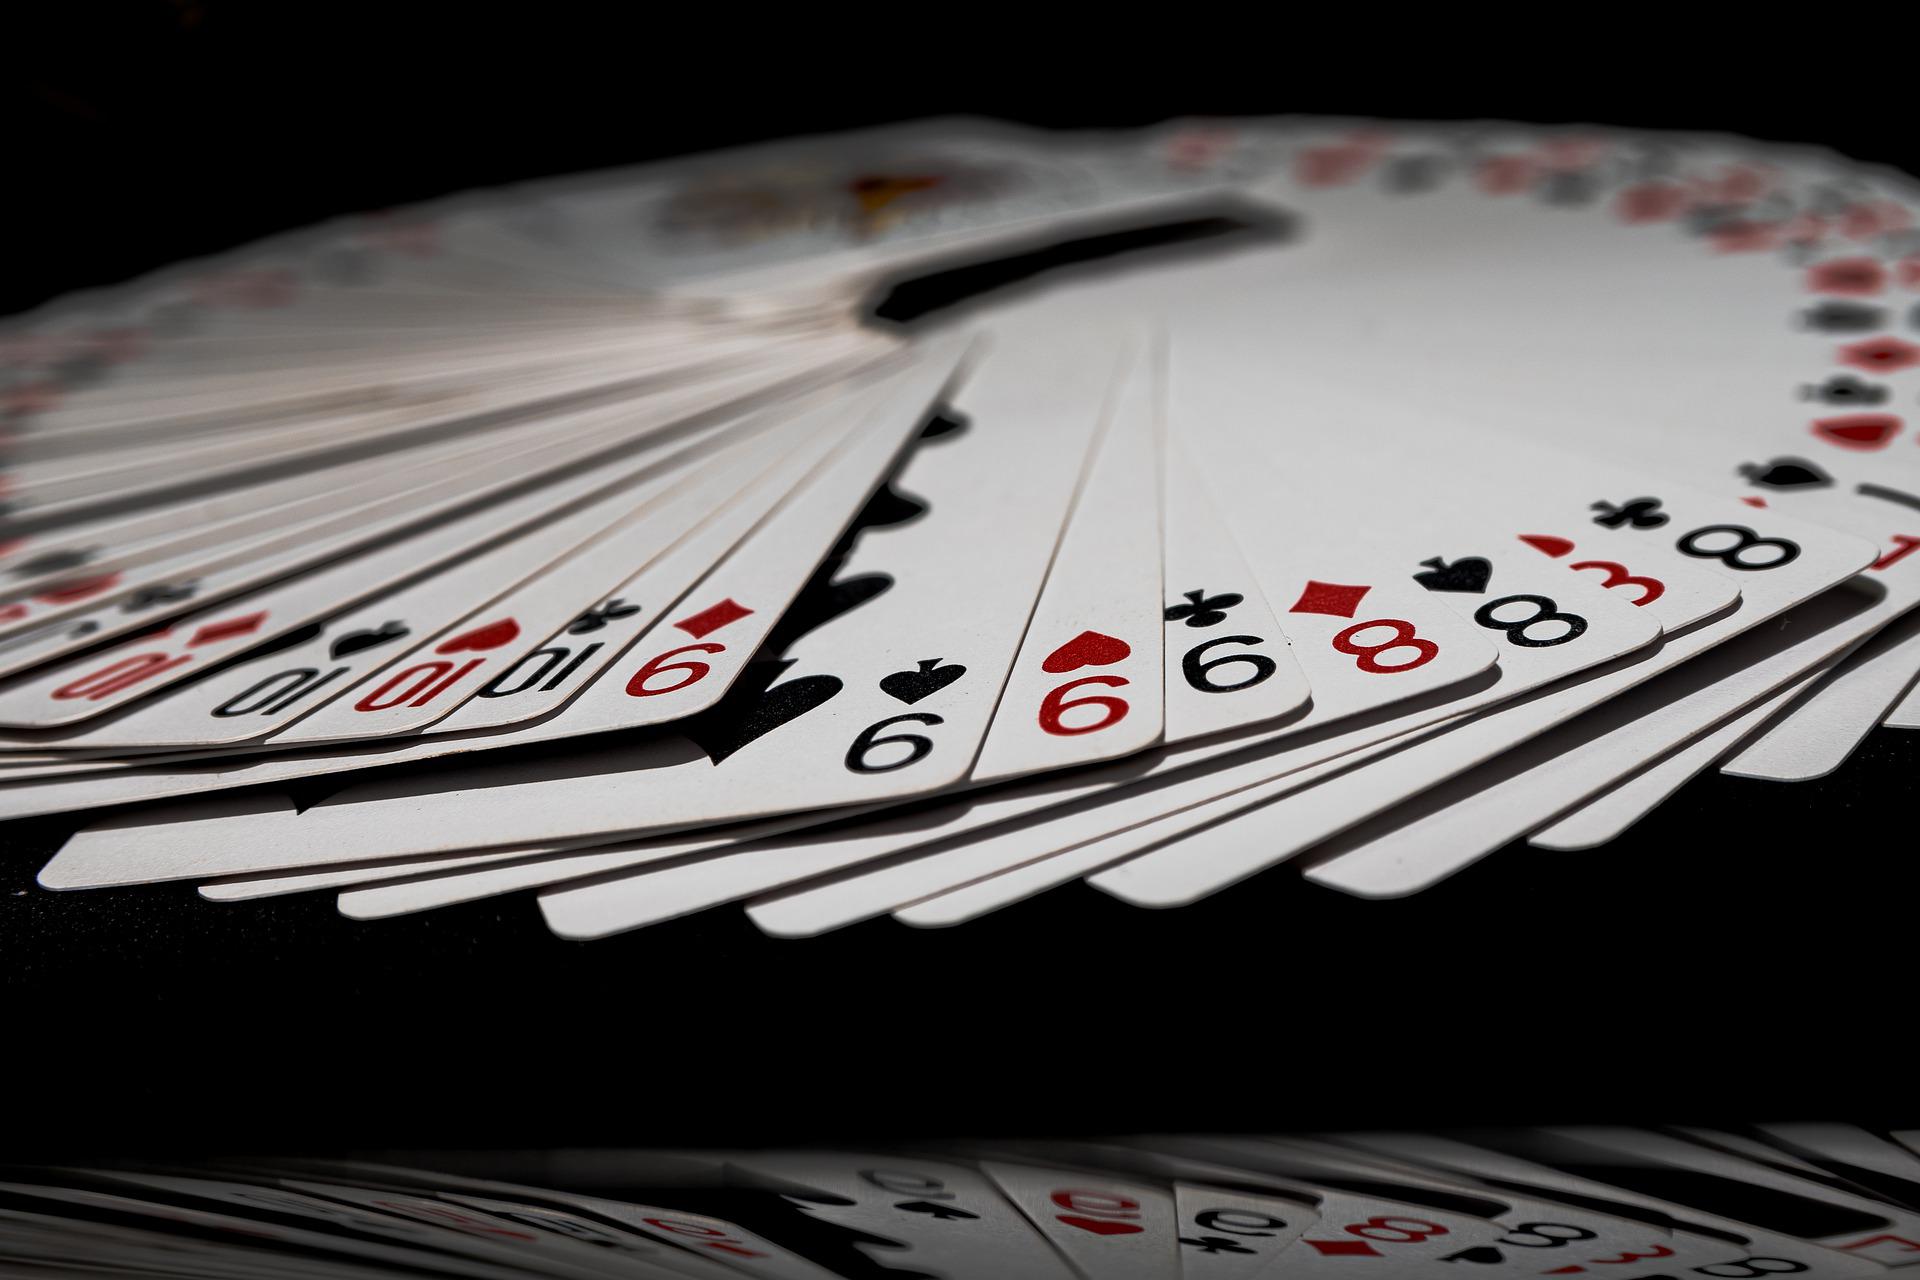 Em um cassino online, os melhores jogos de cartas estão no catálogo, como o poker e o blackjack. Saiba qual desses jogos você deve escolher.